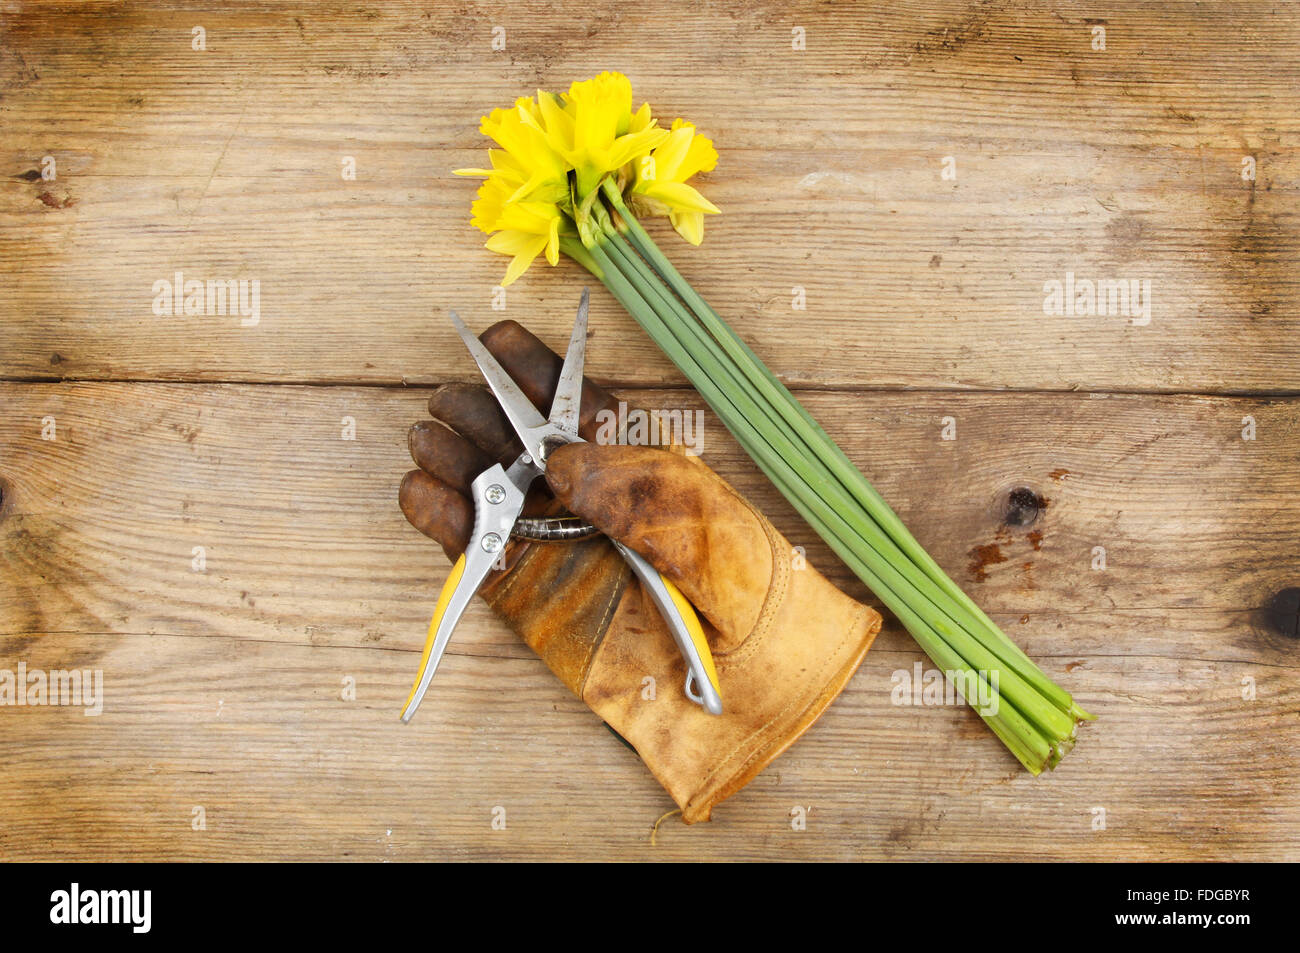 Frisch geschnitten Sie Narzisse Blumen mit Gartenarbeit angegossen und Gartenschere auf einem Holzbrett Stockfoto